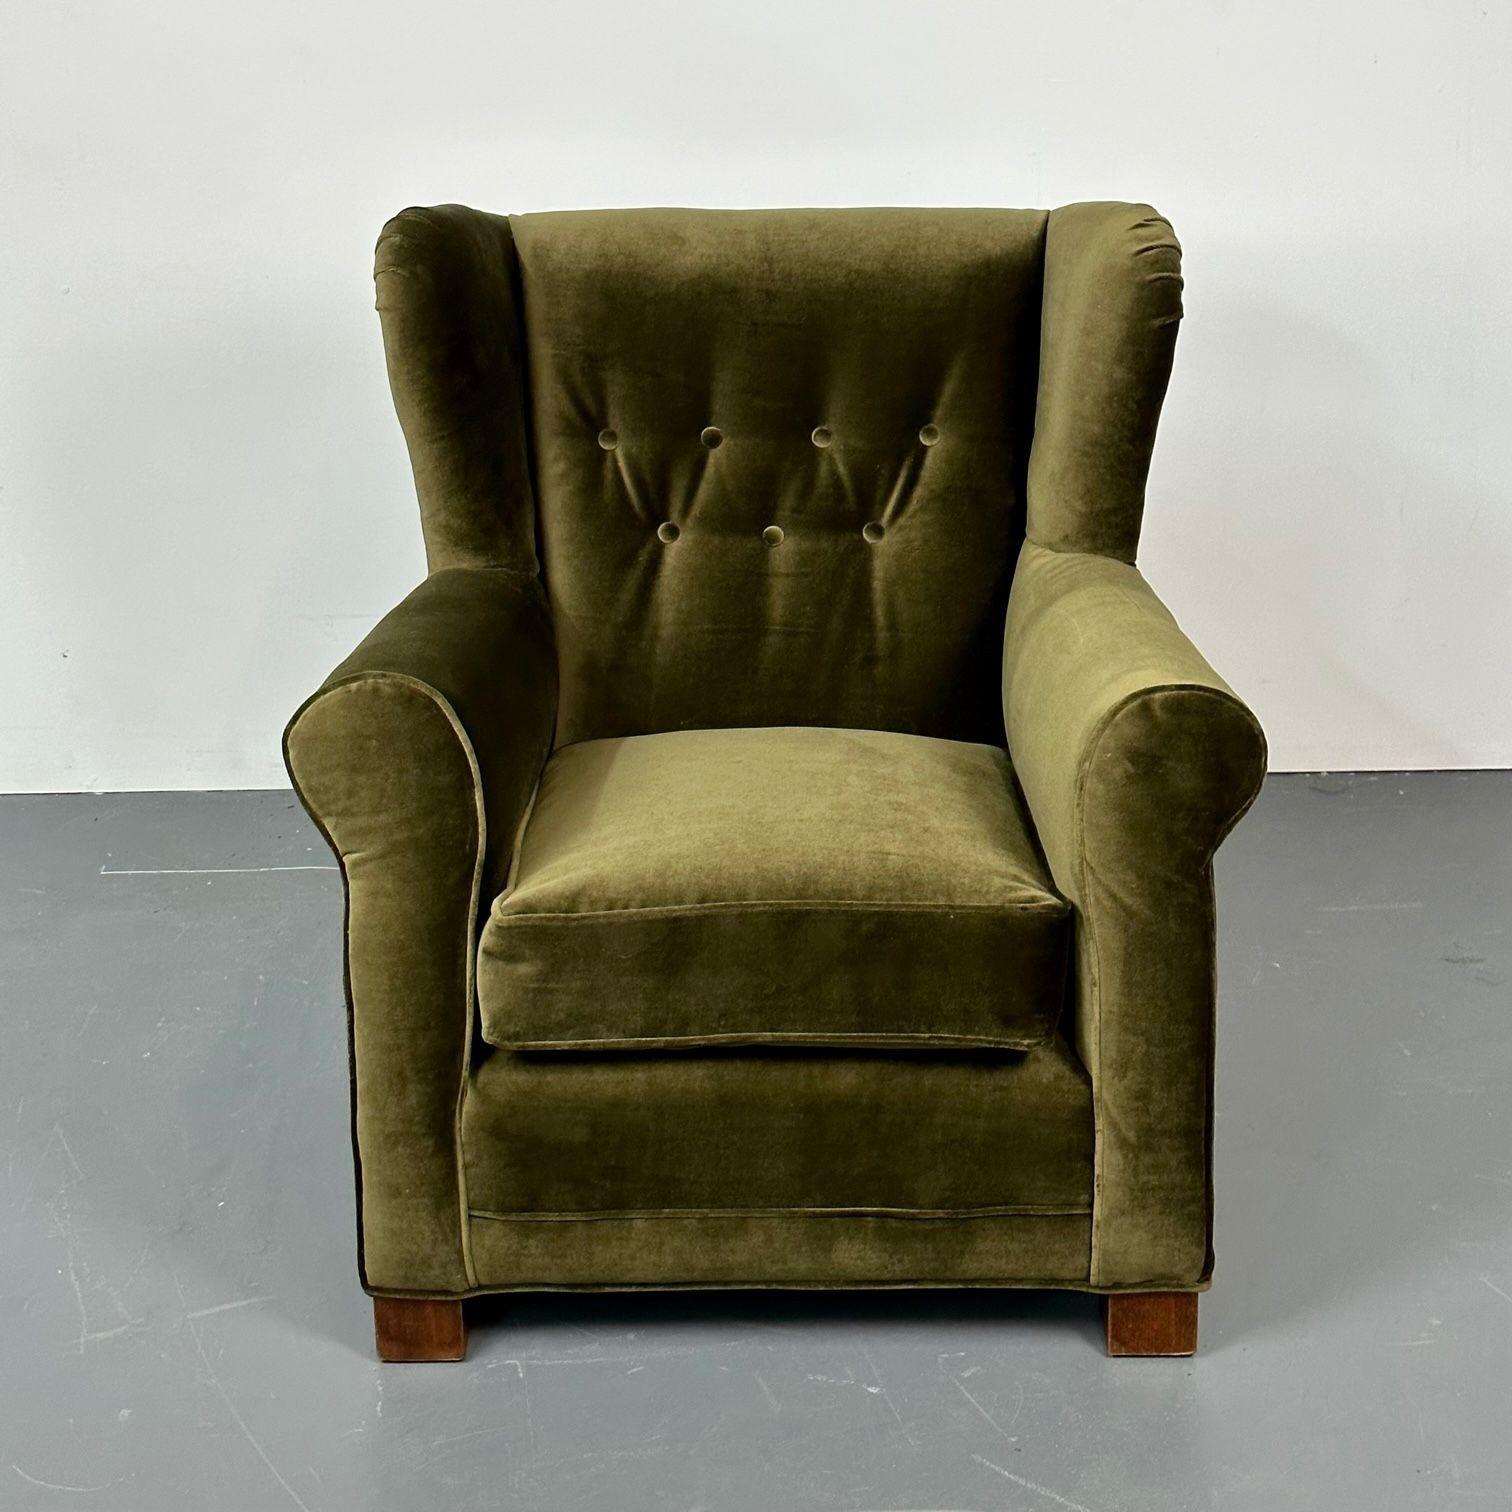 Dänischer Cabinetmaker Wingback / Lounge Chair, Scroll Arm, Fritz Hansen Style
Ohrensessel aus grünem Samt, entworfen und hergestellt in Dänemark, 1940er Jahre. Dieser moderne und übergroße, neu gepolsterte Loungesessel passt sowohl zu einer